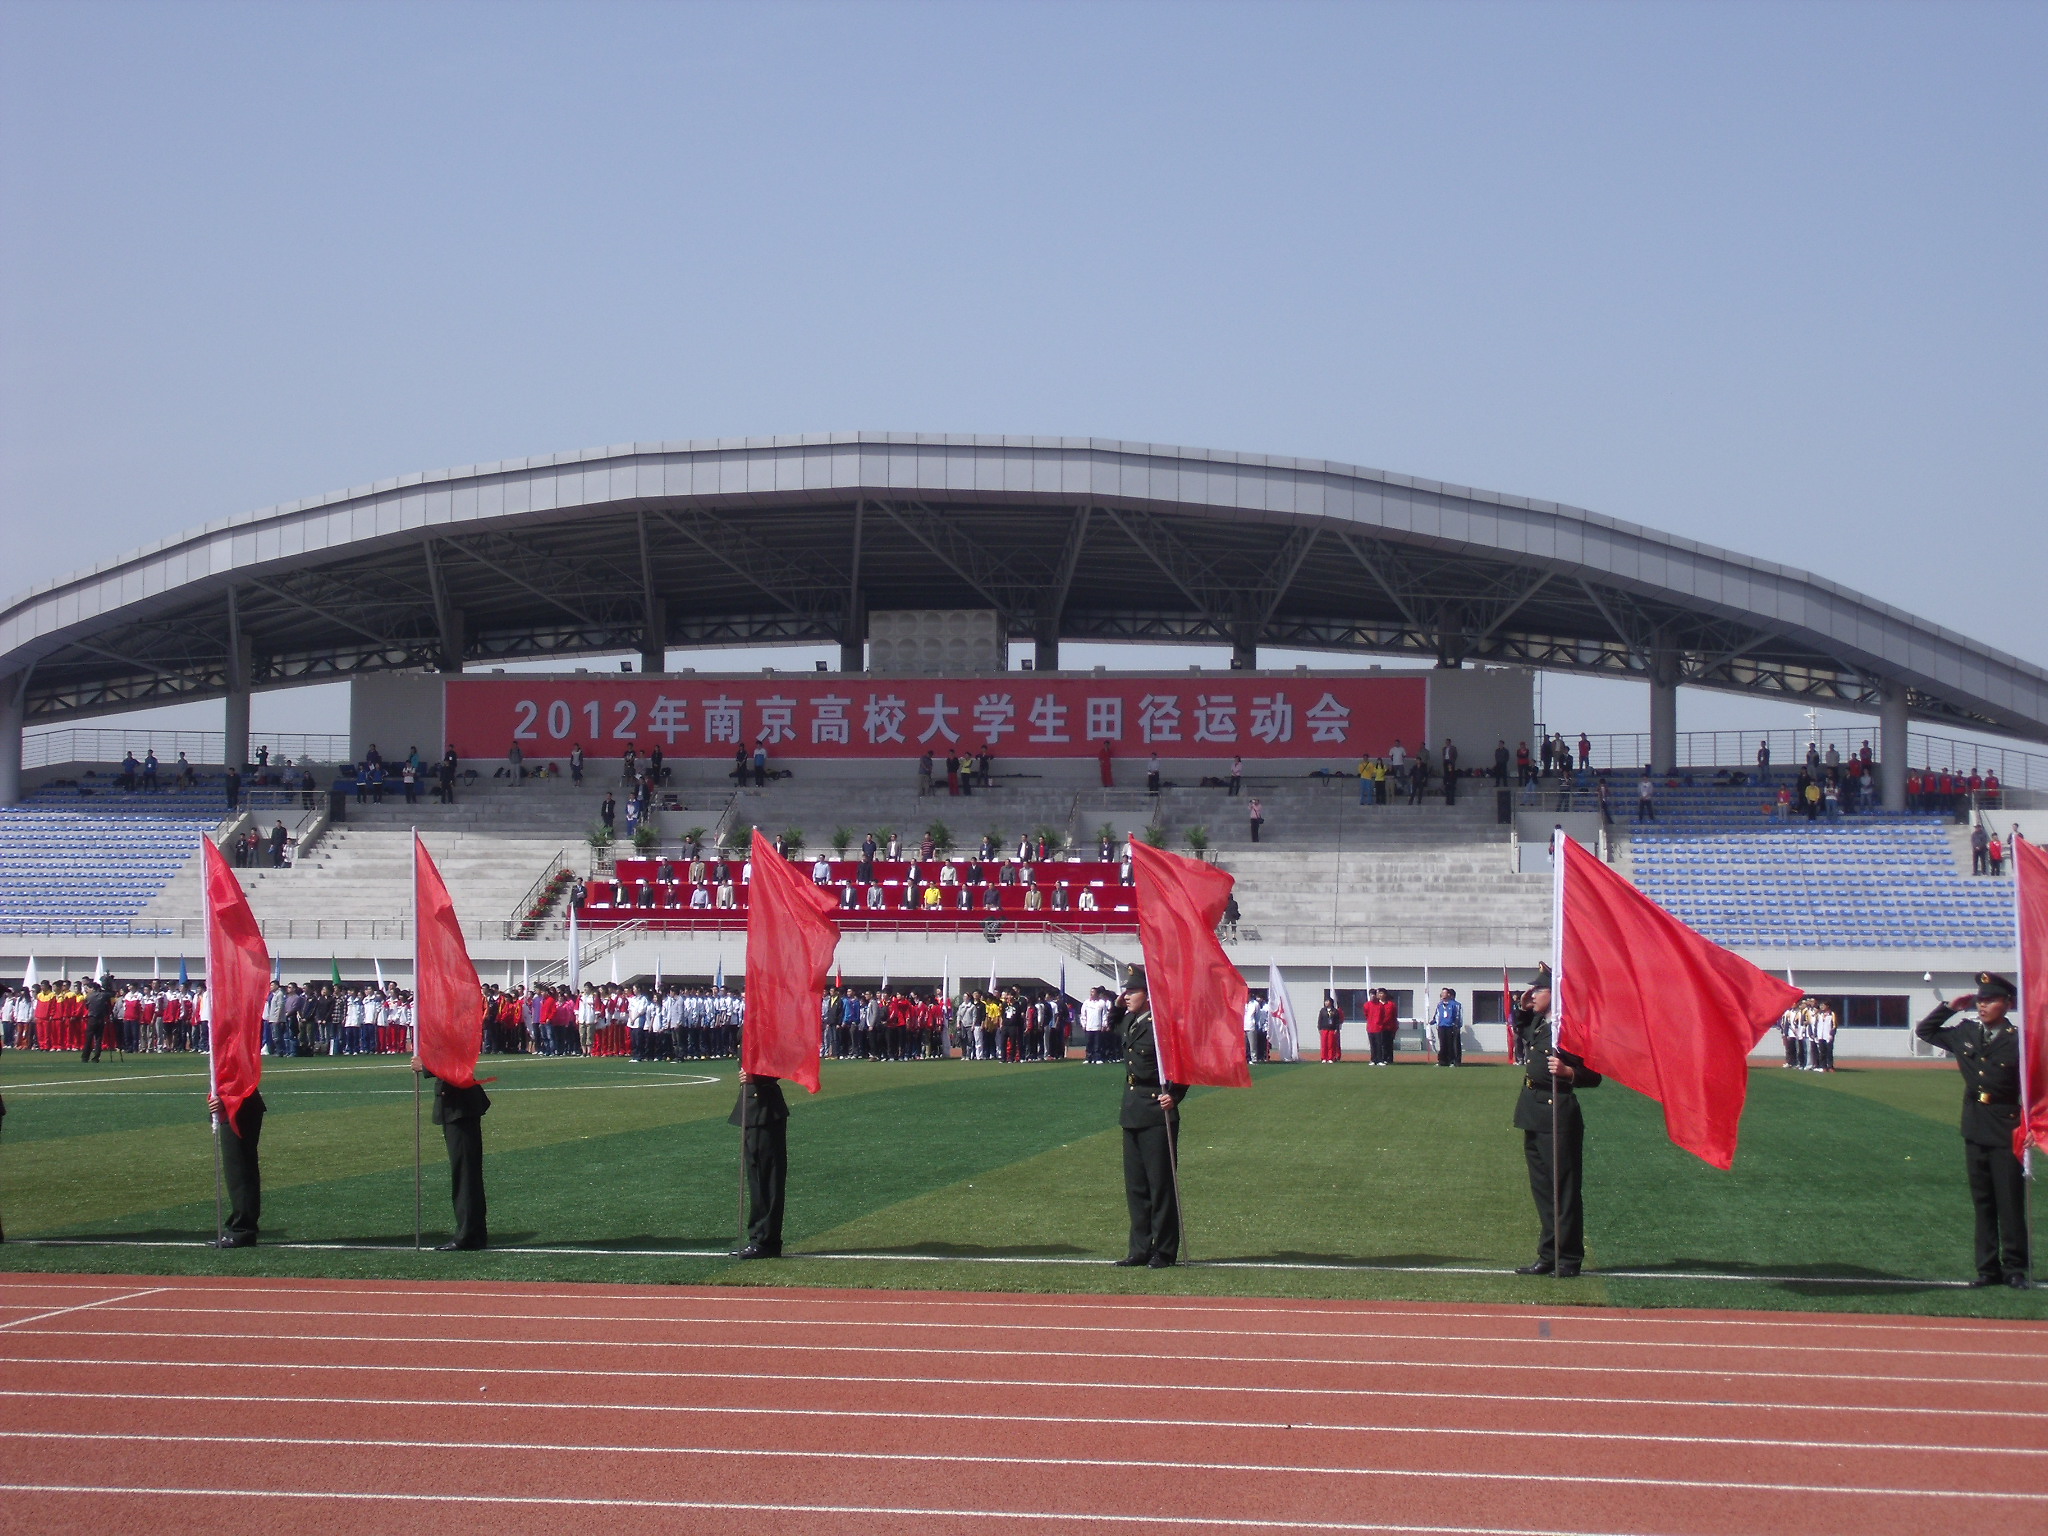 2012年南京高校田径运动会开幕式